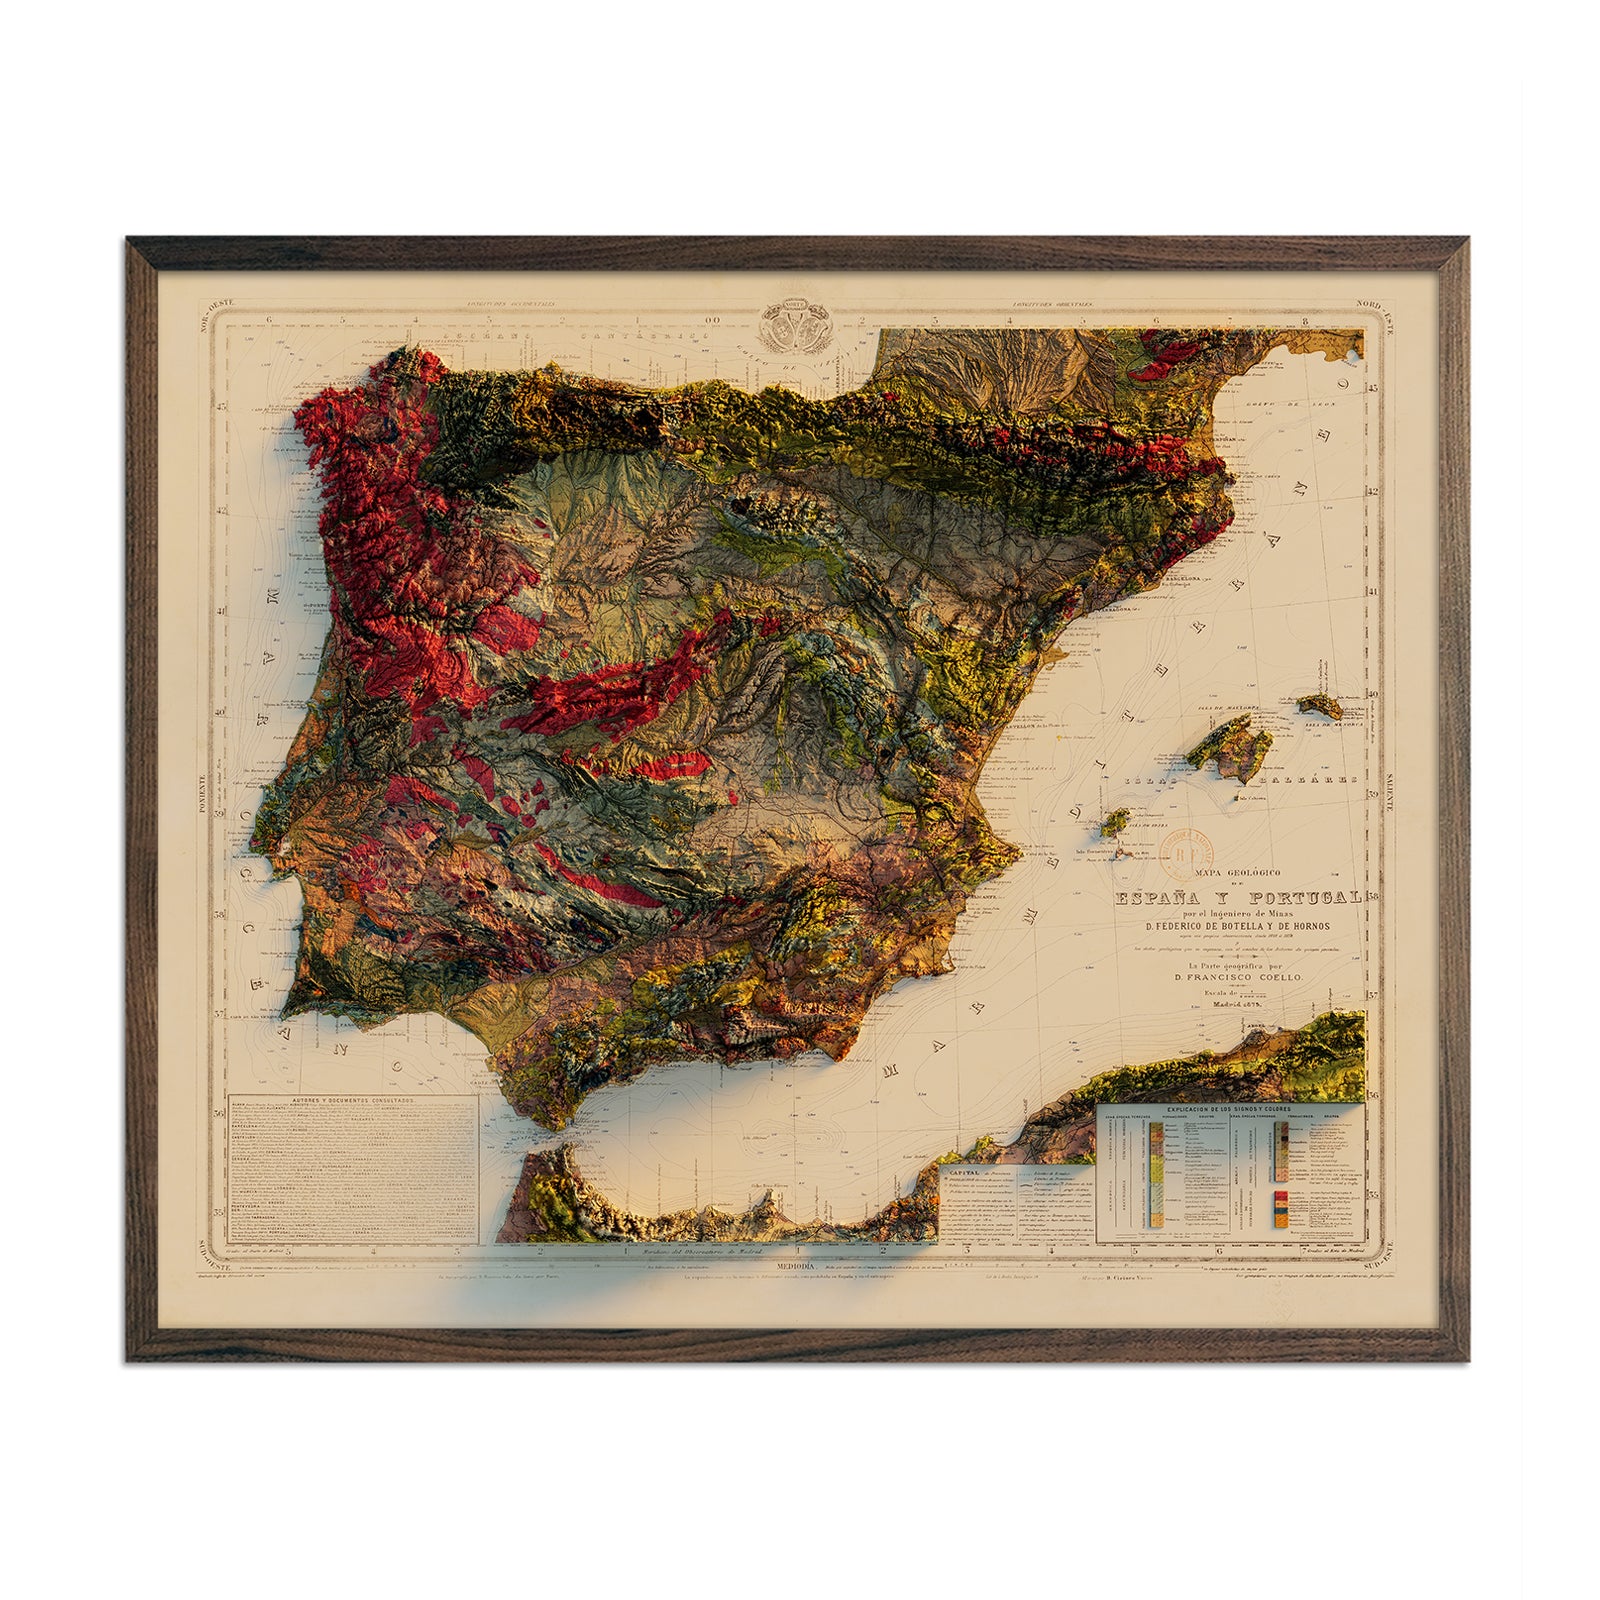 Mapas de Portugal - Vamos para Portugal